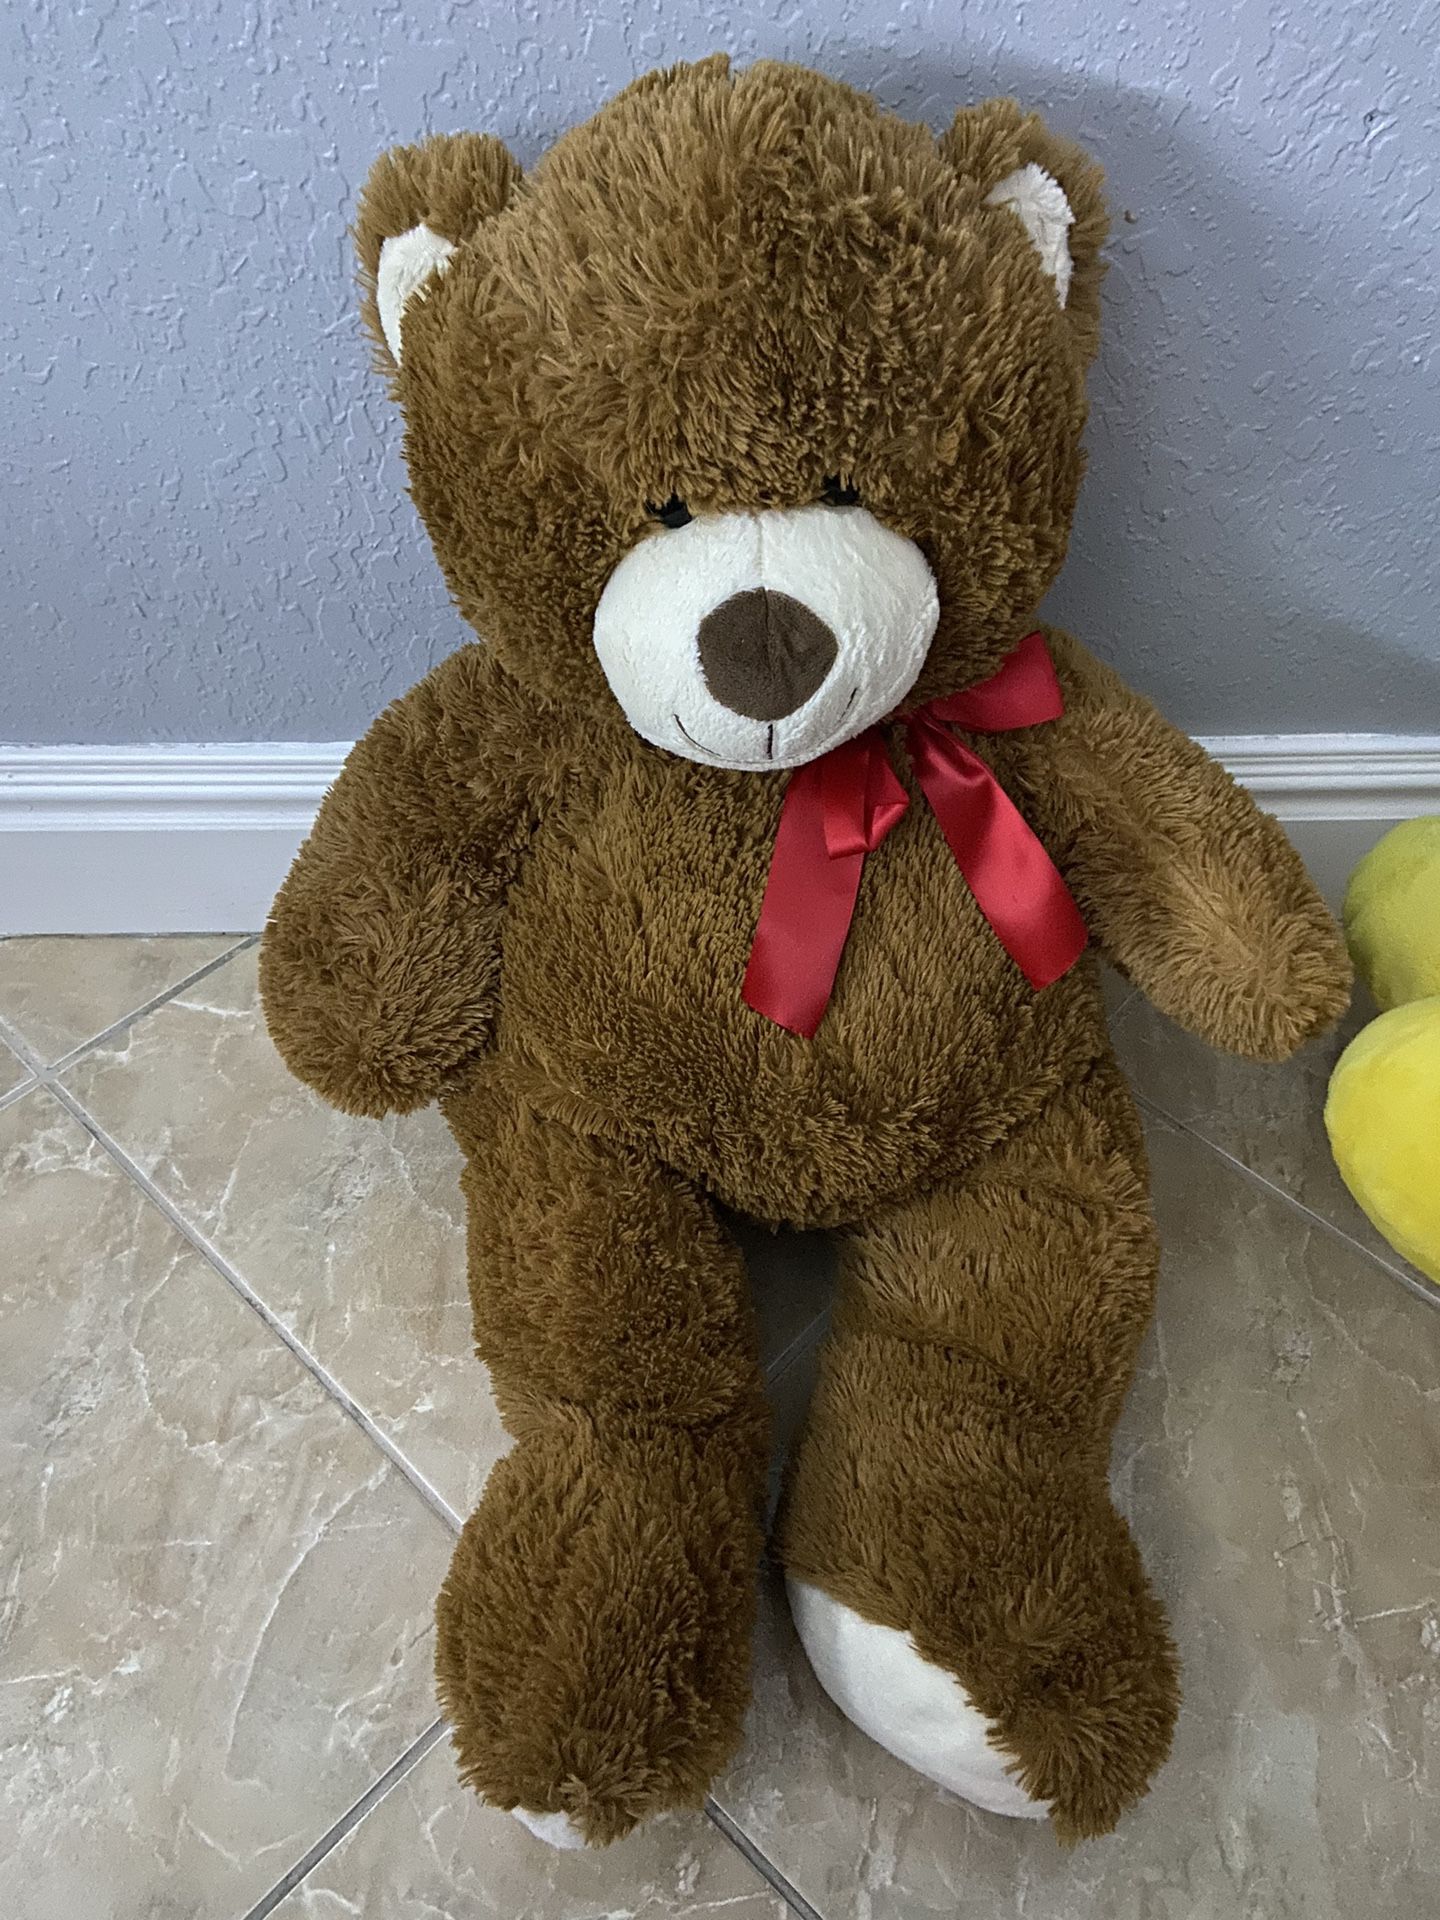 Big Teddy Bear(hablo espanol tambien) 